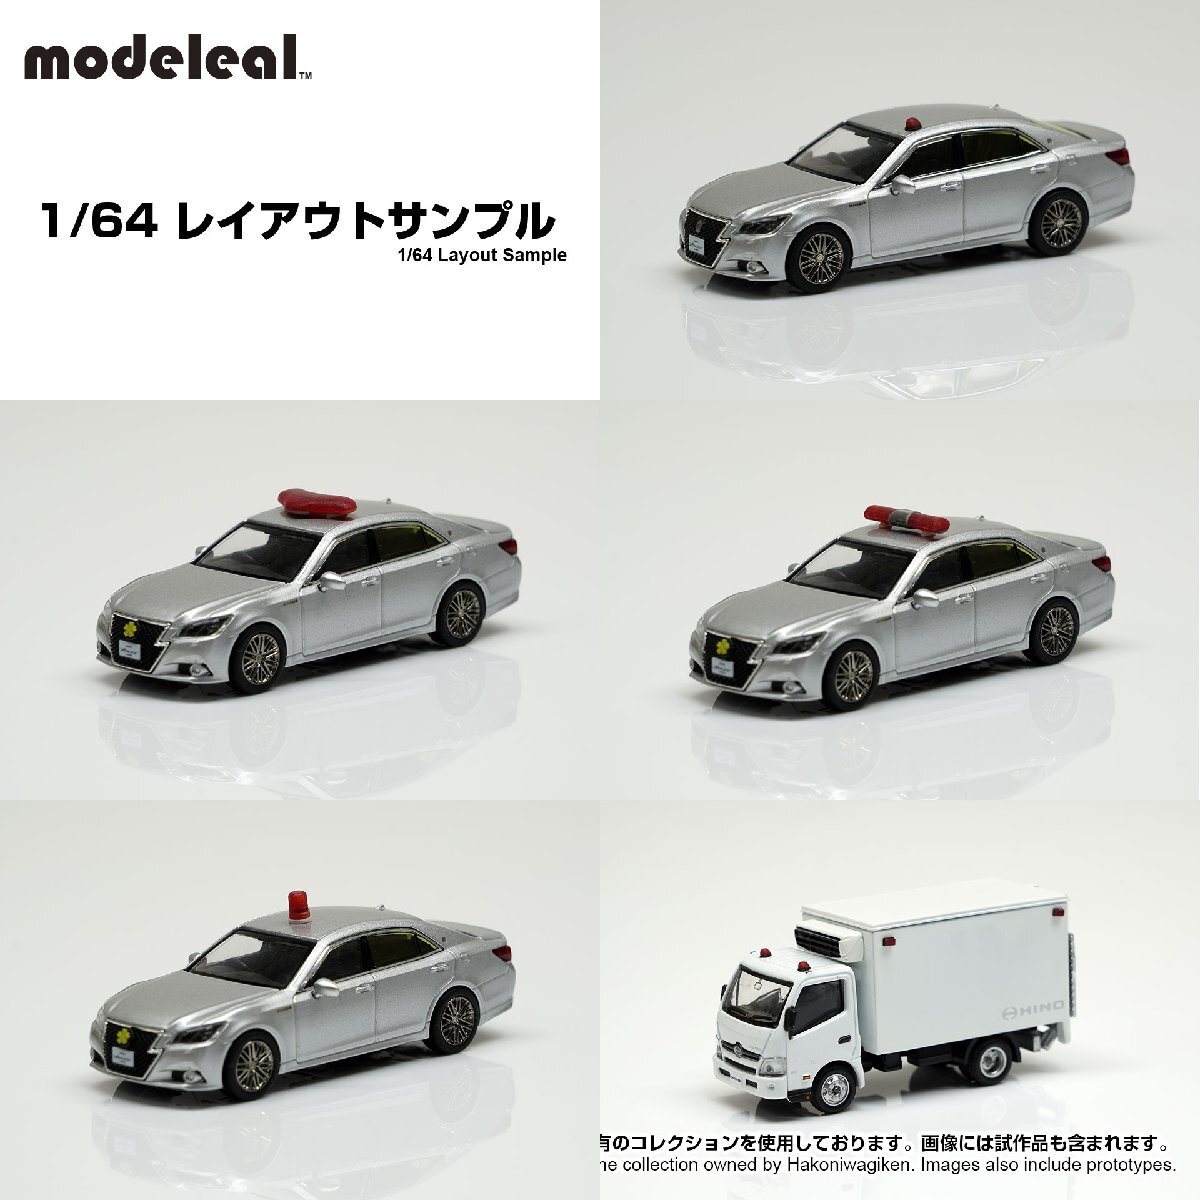 M064-00037 modeleal 1/64 普通車デコレーションキット パトランプの画像3